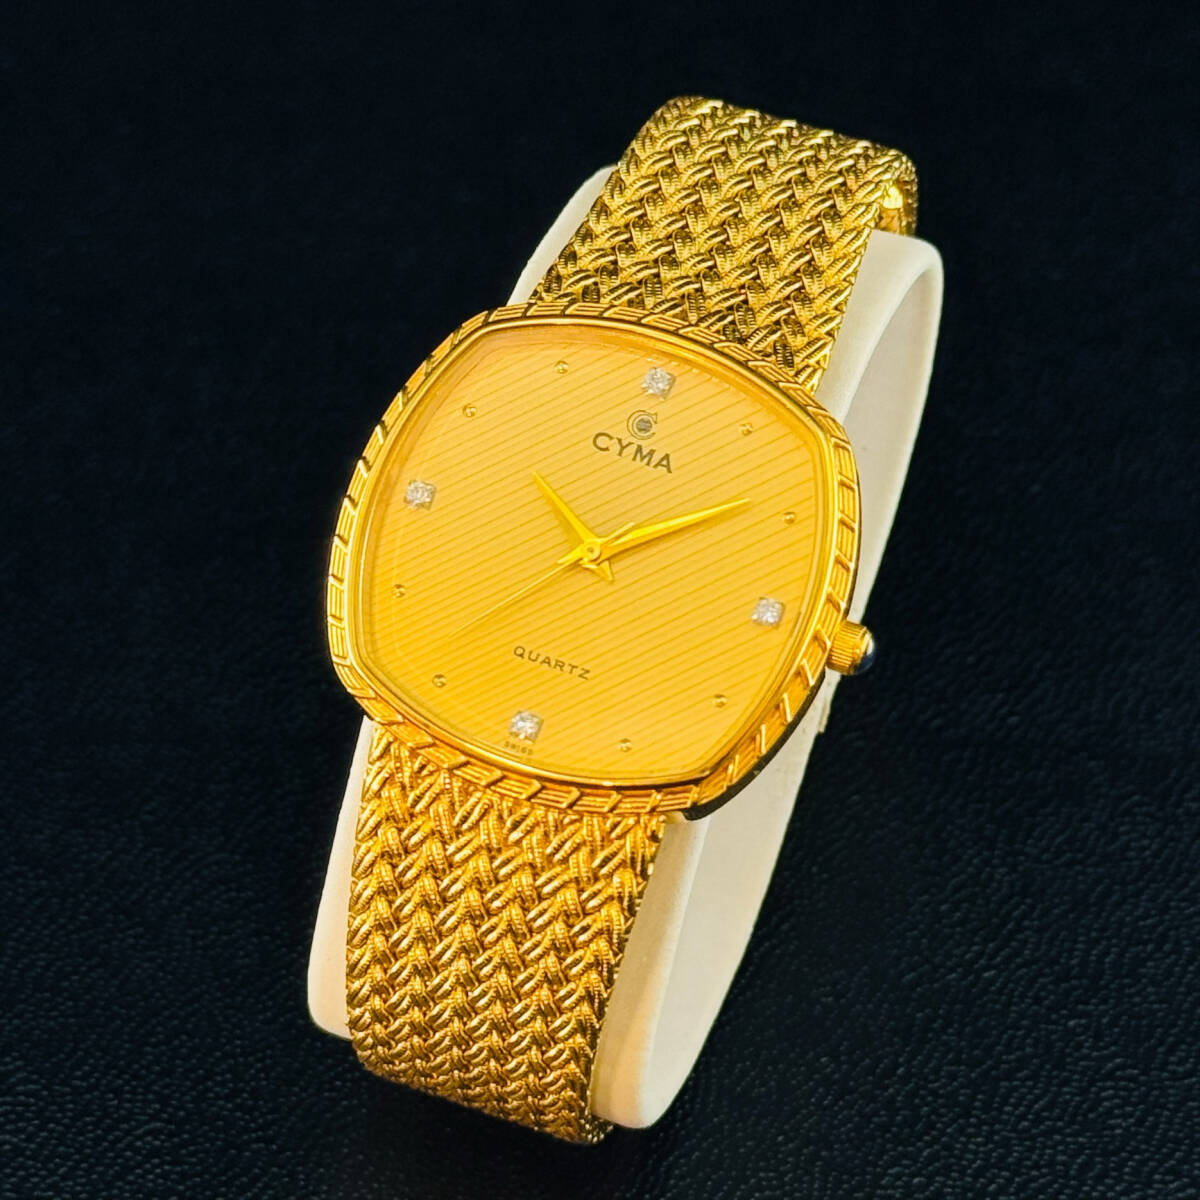 CYMA Cima 604SP QUARTZ quartz 4P diamond Gold color present condition goods 14910 1 jpy exhibition brand watch wristwatch good-looking men's 